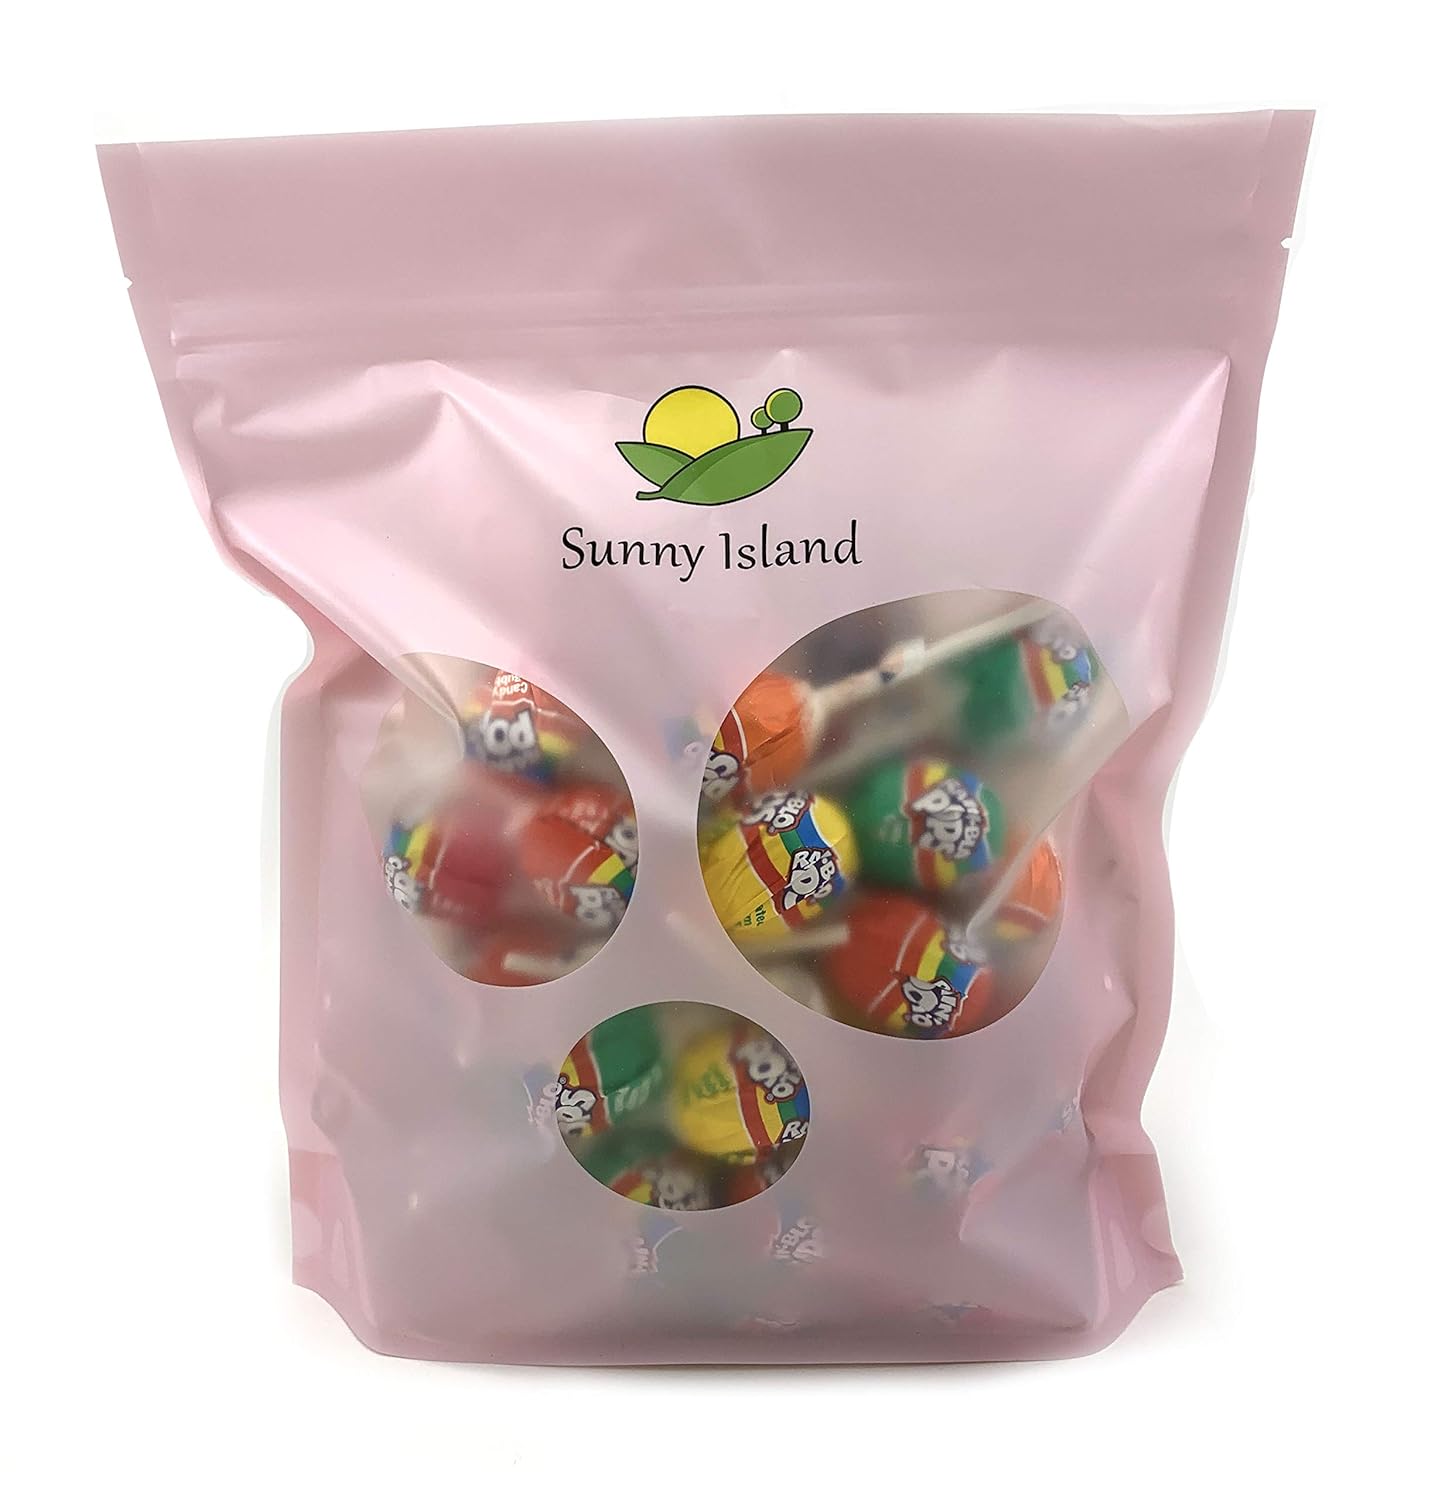  Sunny Island Rain Blo Fruit Assorted Flavors Bubble Gum Filled Pops Candy, Bulk - 2 Pound Bag